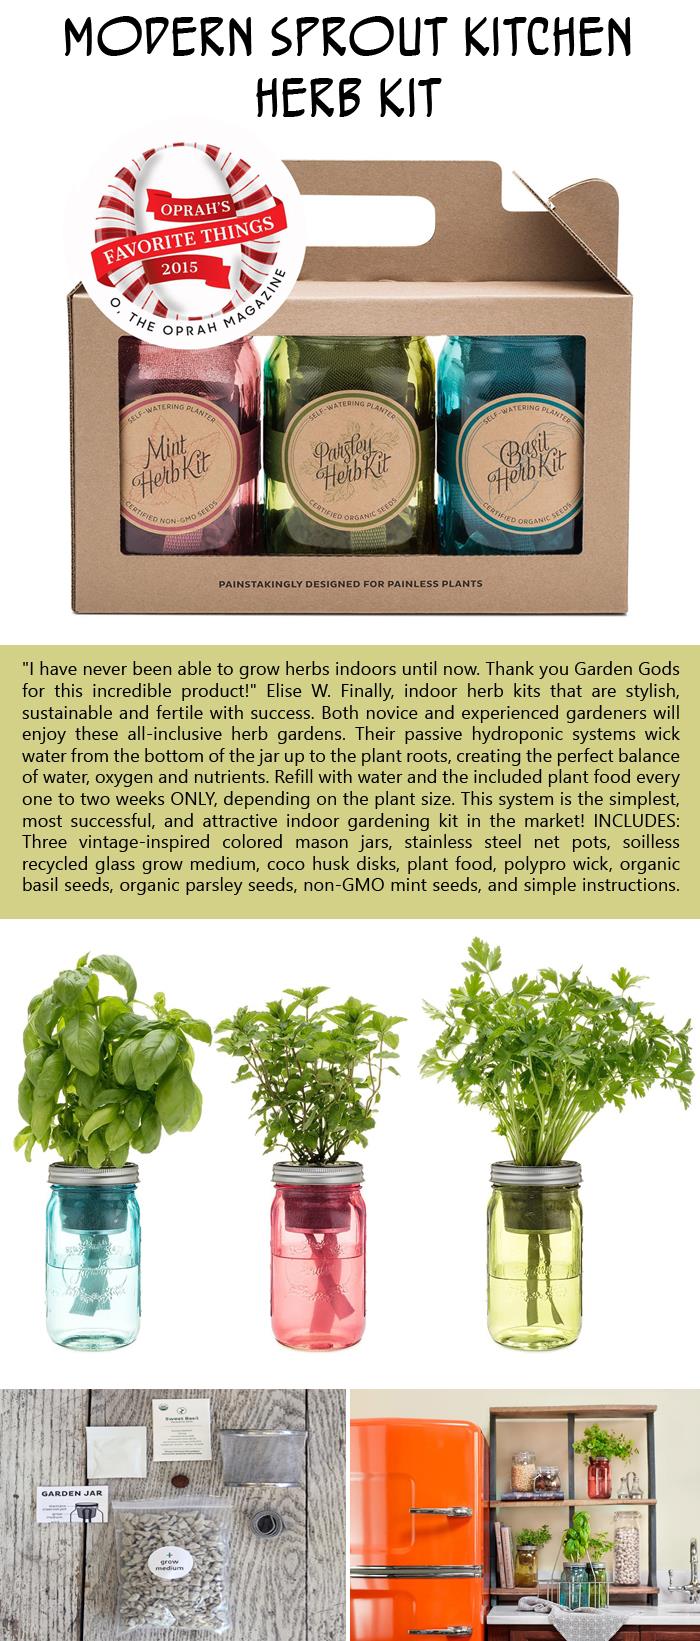 Modern Sprout kitchen herb kit